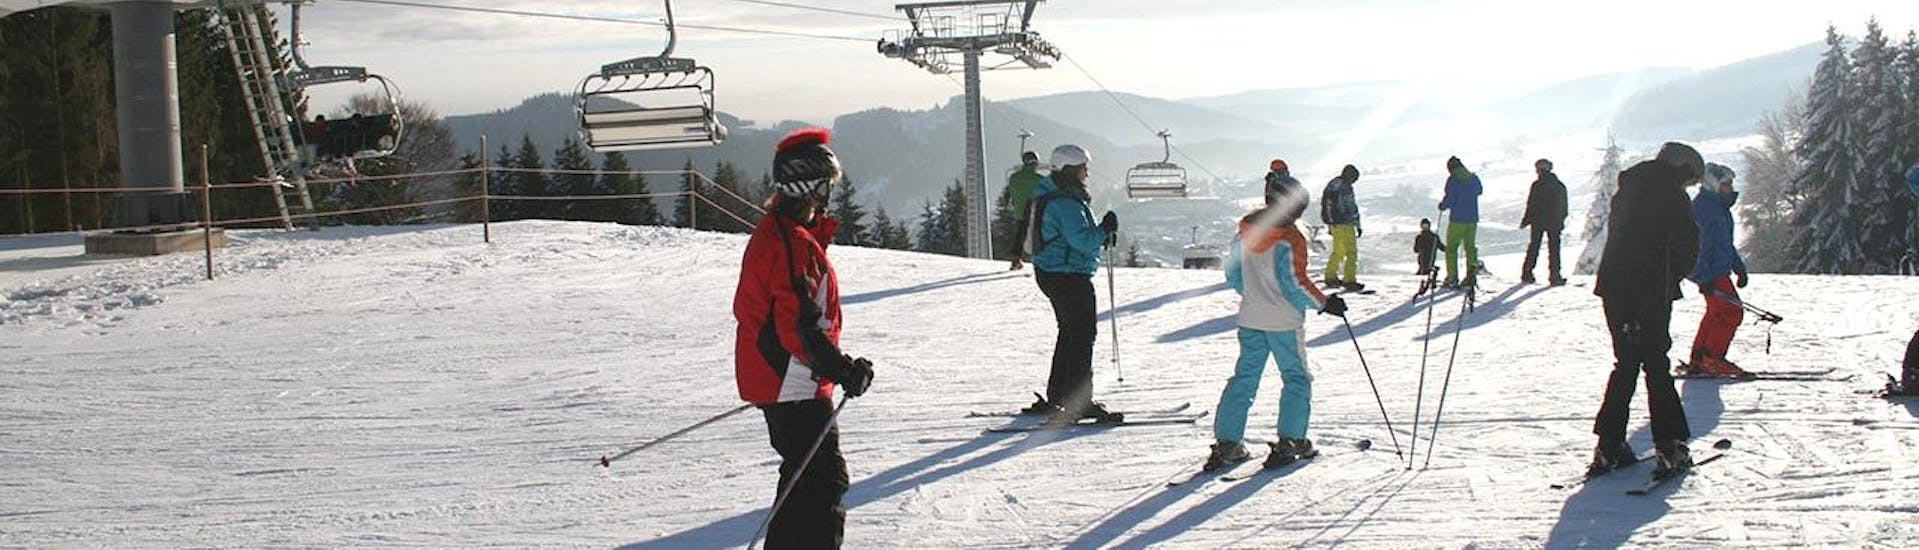 Im Rahmen des Angebots Skikurs für Jugendliche (13-17 J.) - Alle Levels - Halbtags hat eine Gruppe von Jugendlichen Spaß beim Skifahren unter der Aufsicht eines erfahrenen Skilehrers der Skischule Snow & Bike Factory Willingen.